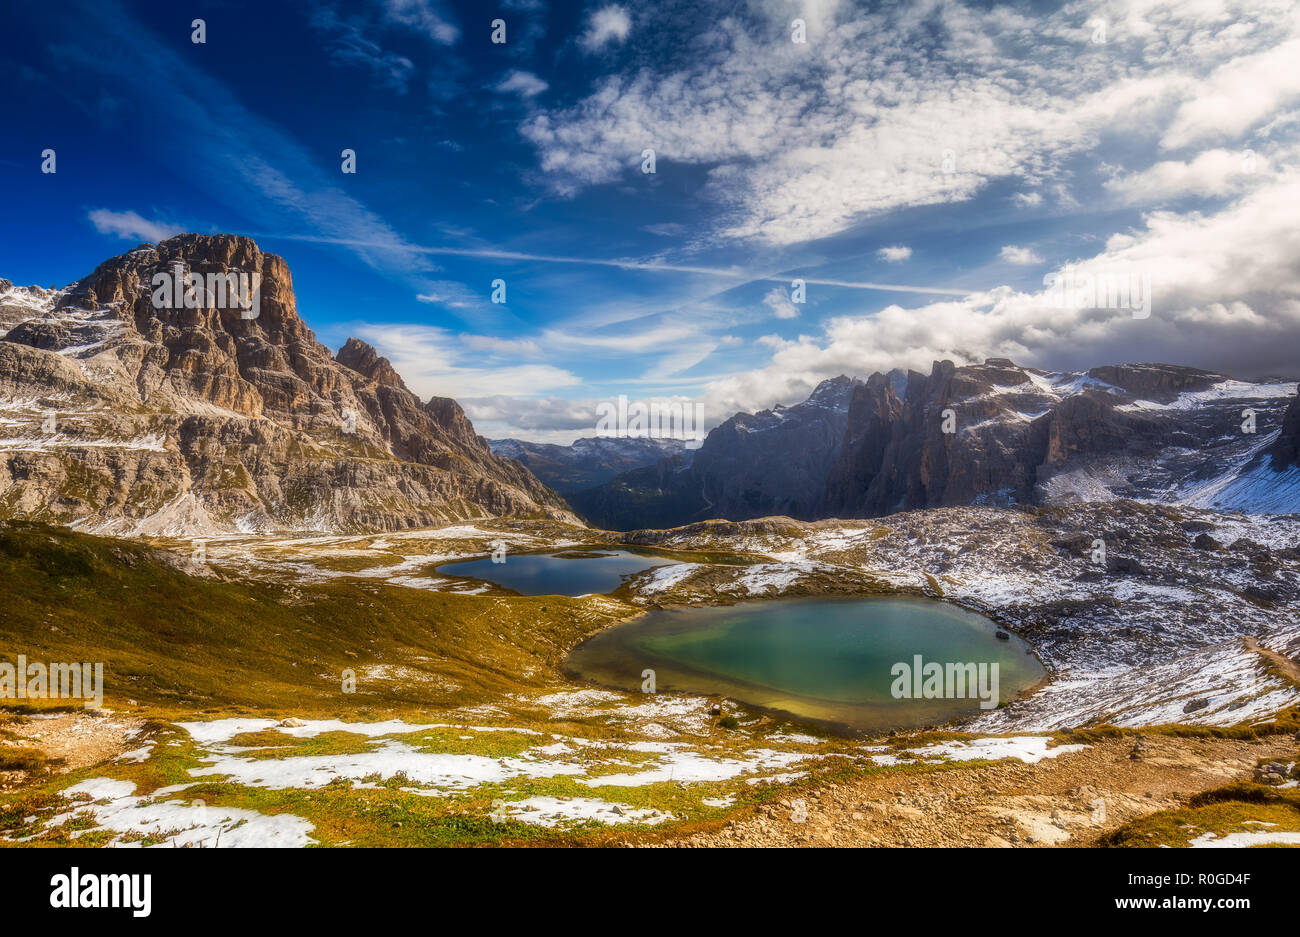 'Lacs Laghi del Piani' près de 'Tre Cime di Lavaredo' (Drei Zinnen), Dolomites, Italie Banque D'Images